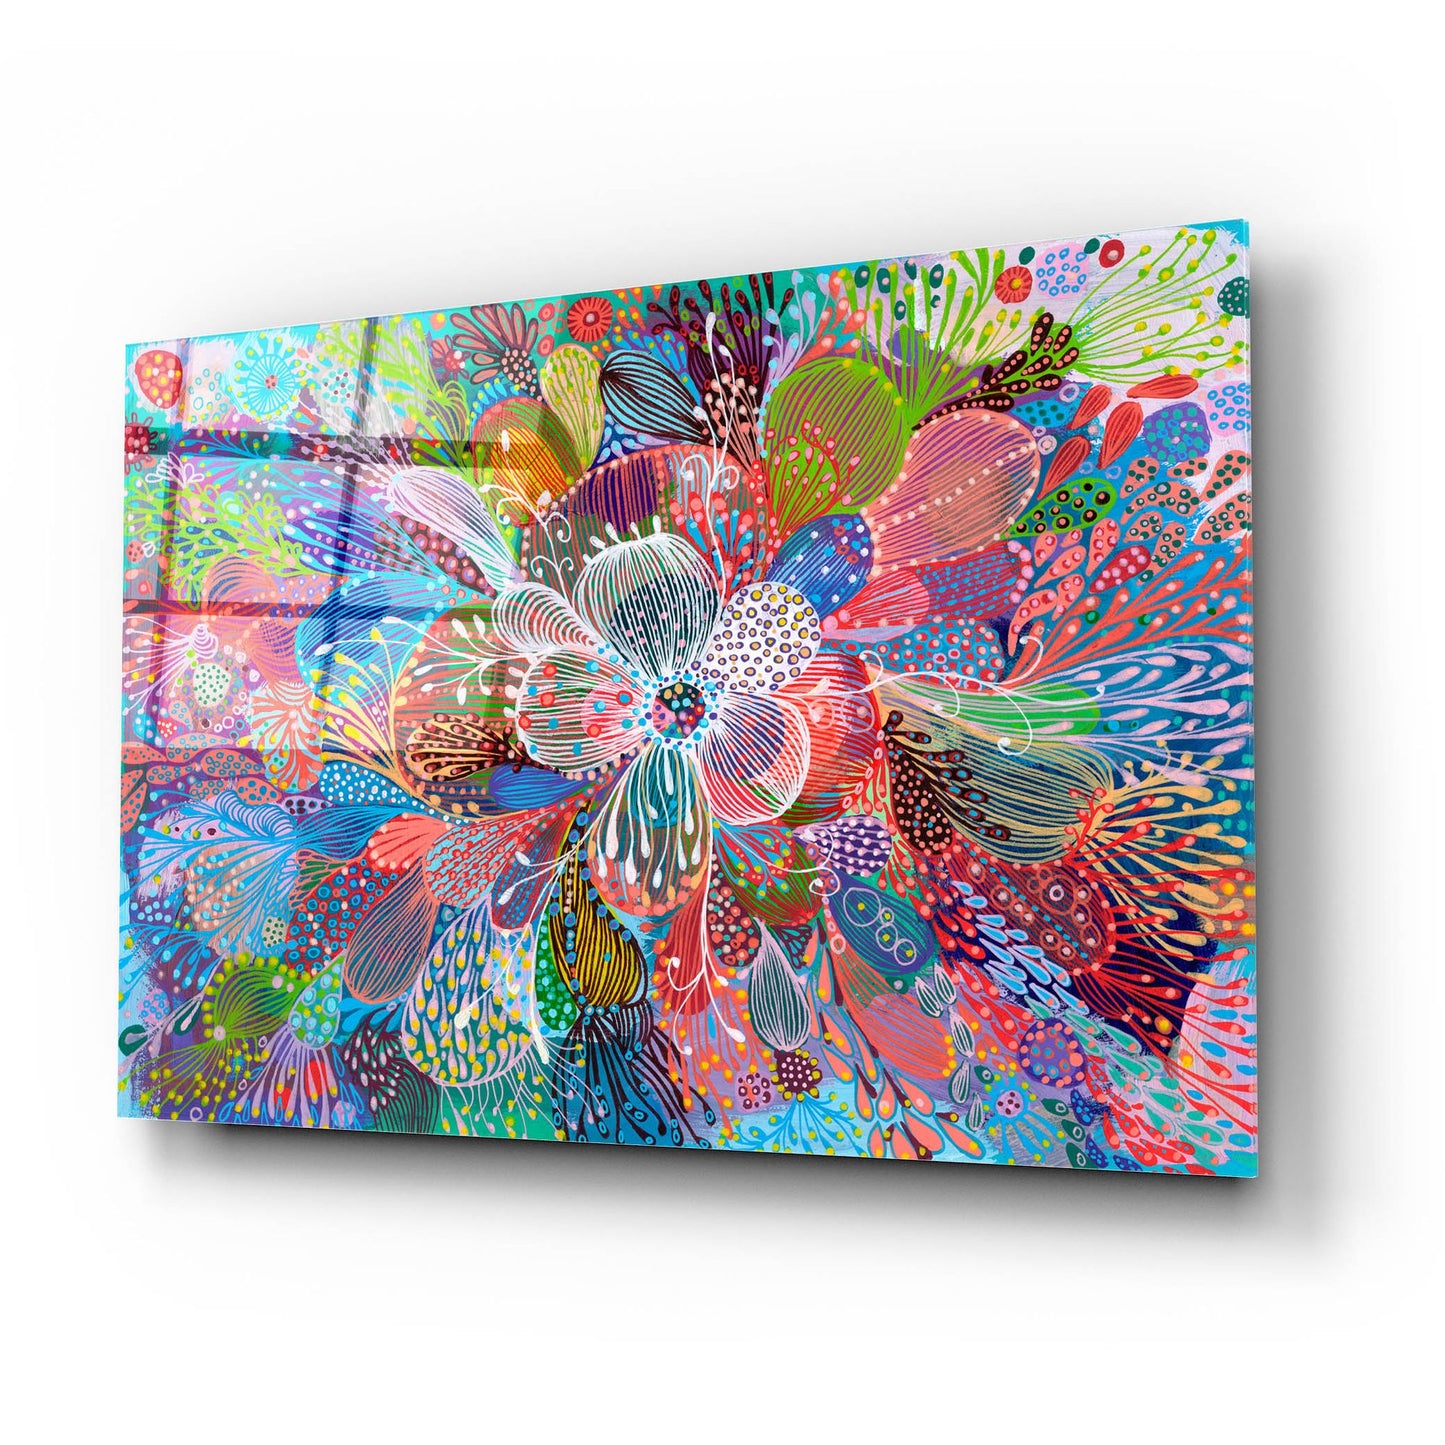 Epic Art 'Blooming2 by Noemi Ibarz, Acrylic Glass Wall Art,24x16